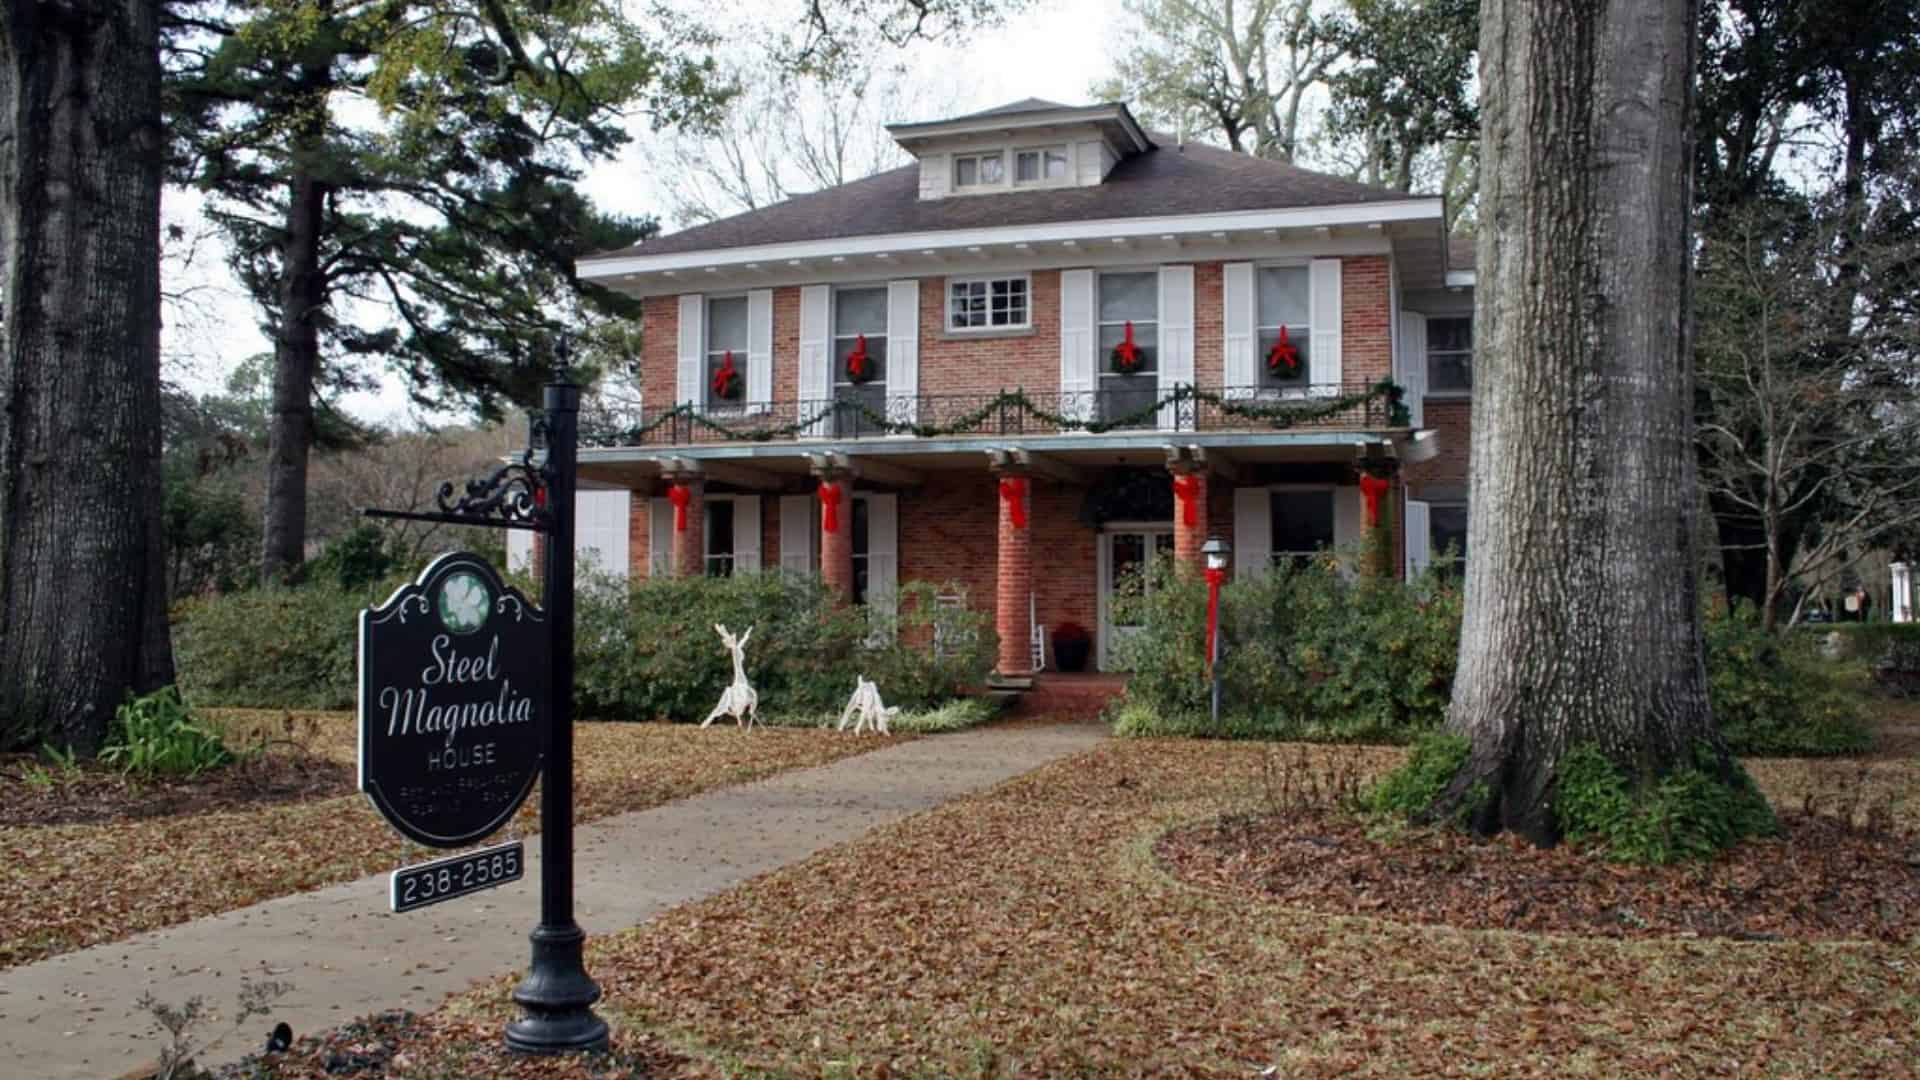 The Magnolia House